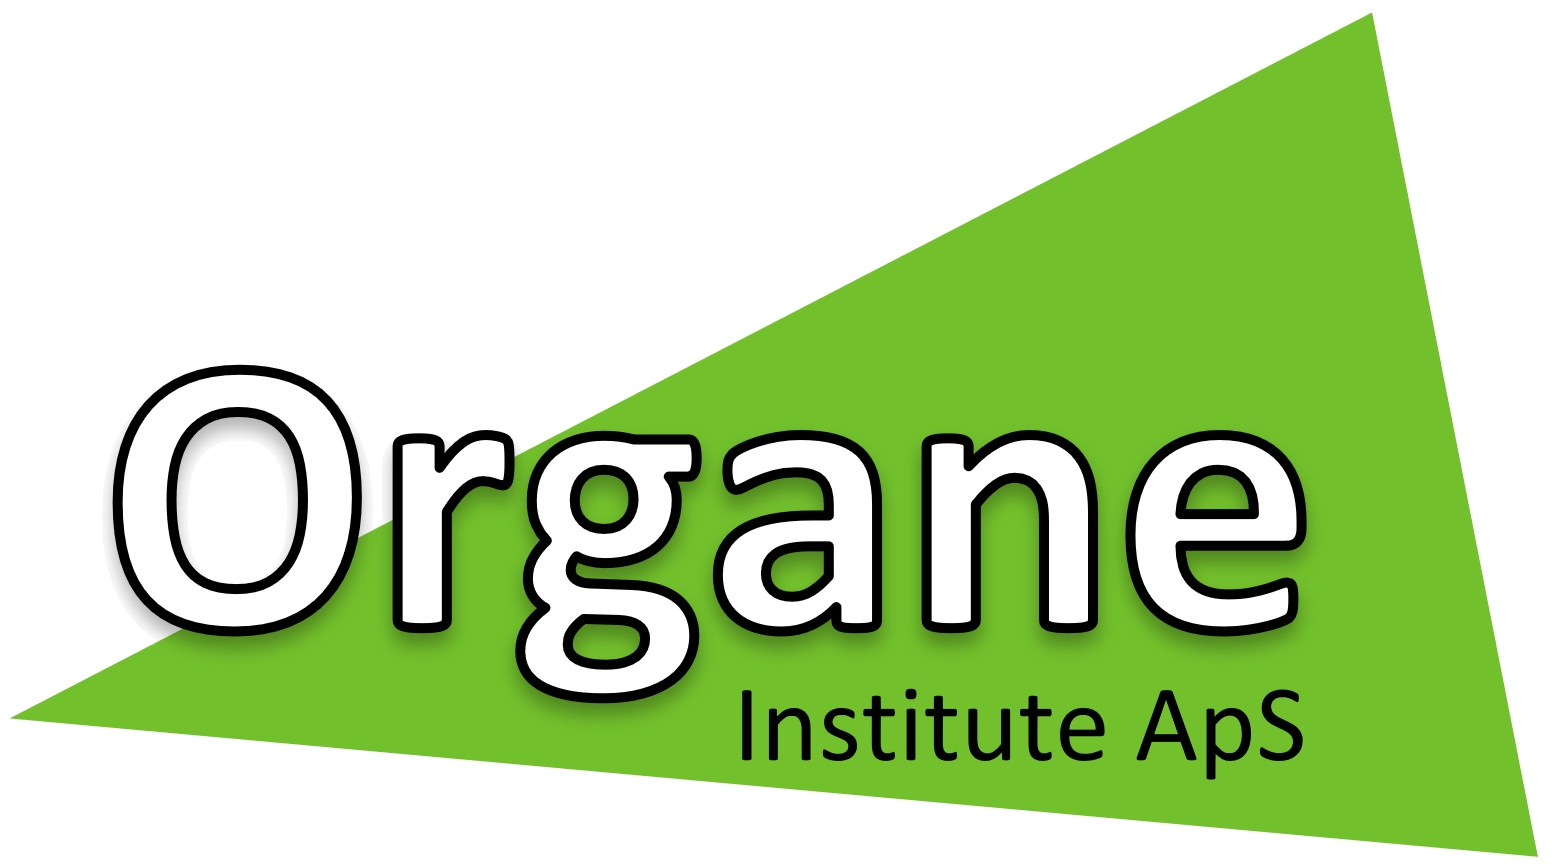 Organe Institute ApS